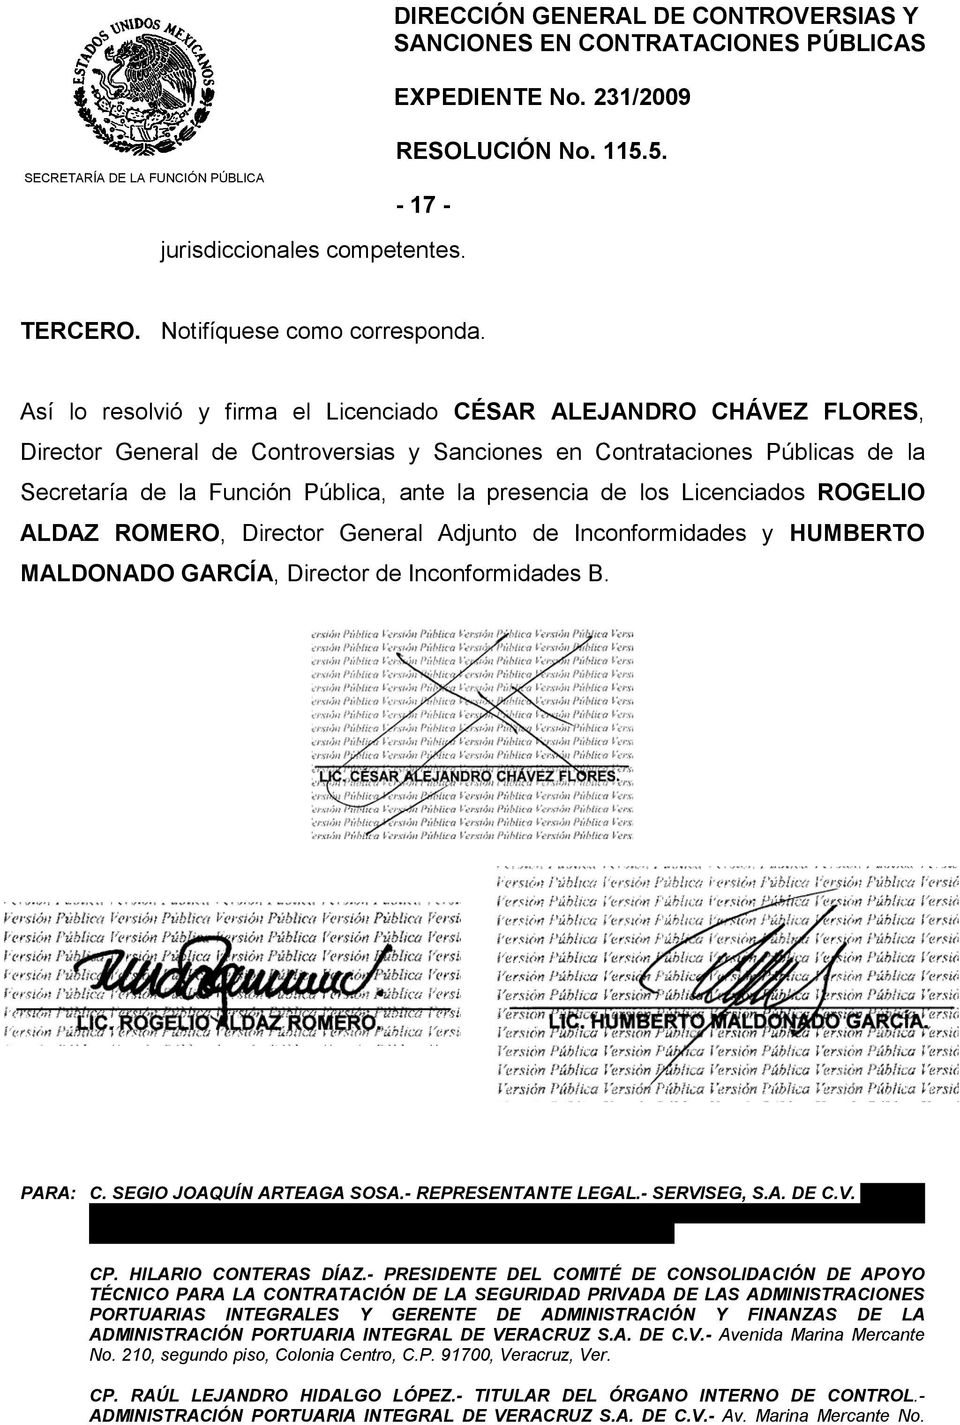 Así lo resolvió y firma el Licenciado CÉSAR ALEJANDRO CHÁVEZ FLORES, Director General de Controversias y Sanciones en Contrataciones Públicas de la Secretaría de la Función Pública, ante la presencia